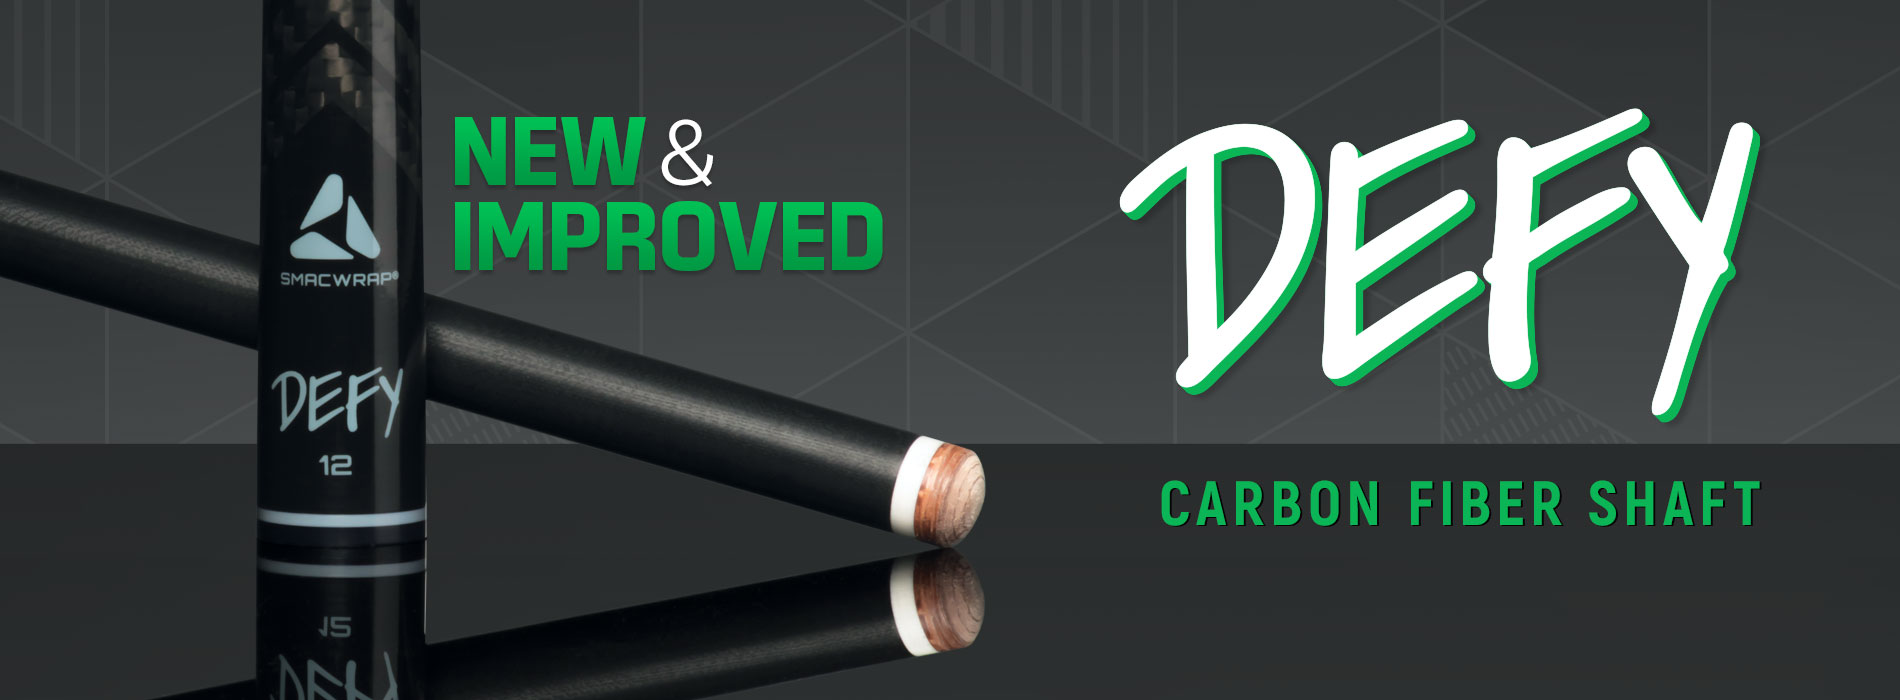 New and Improved Defy Carbon Fiber Shaft